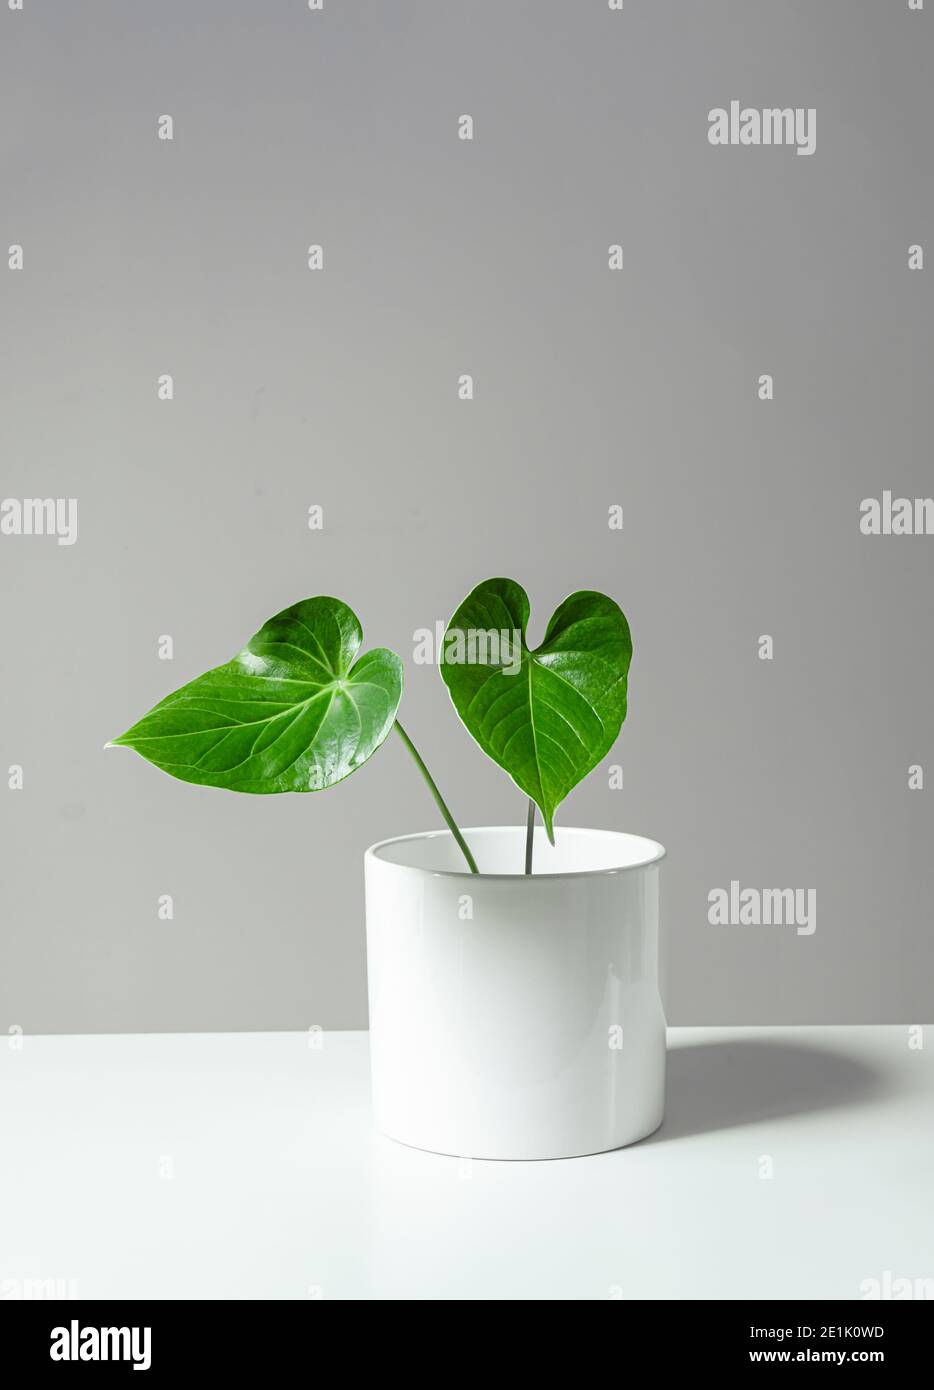 Anthurium maison plante dans un pot blanc debout sur la table blanche, concept de minimalisme à l'intérieur Banque D'Images